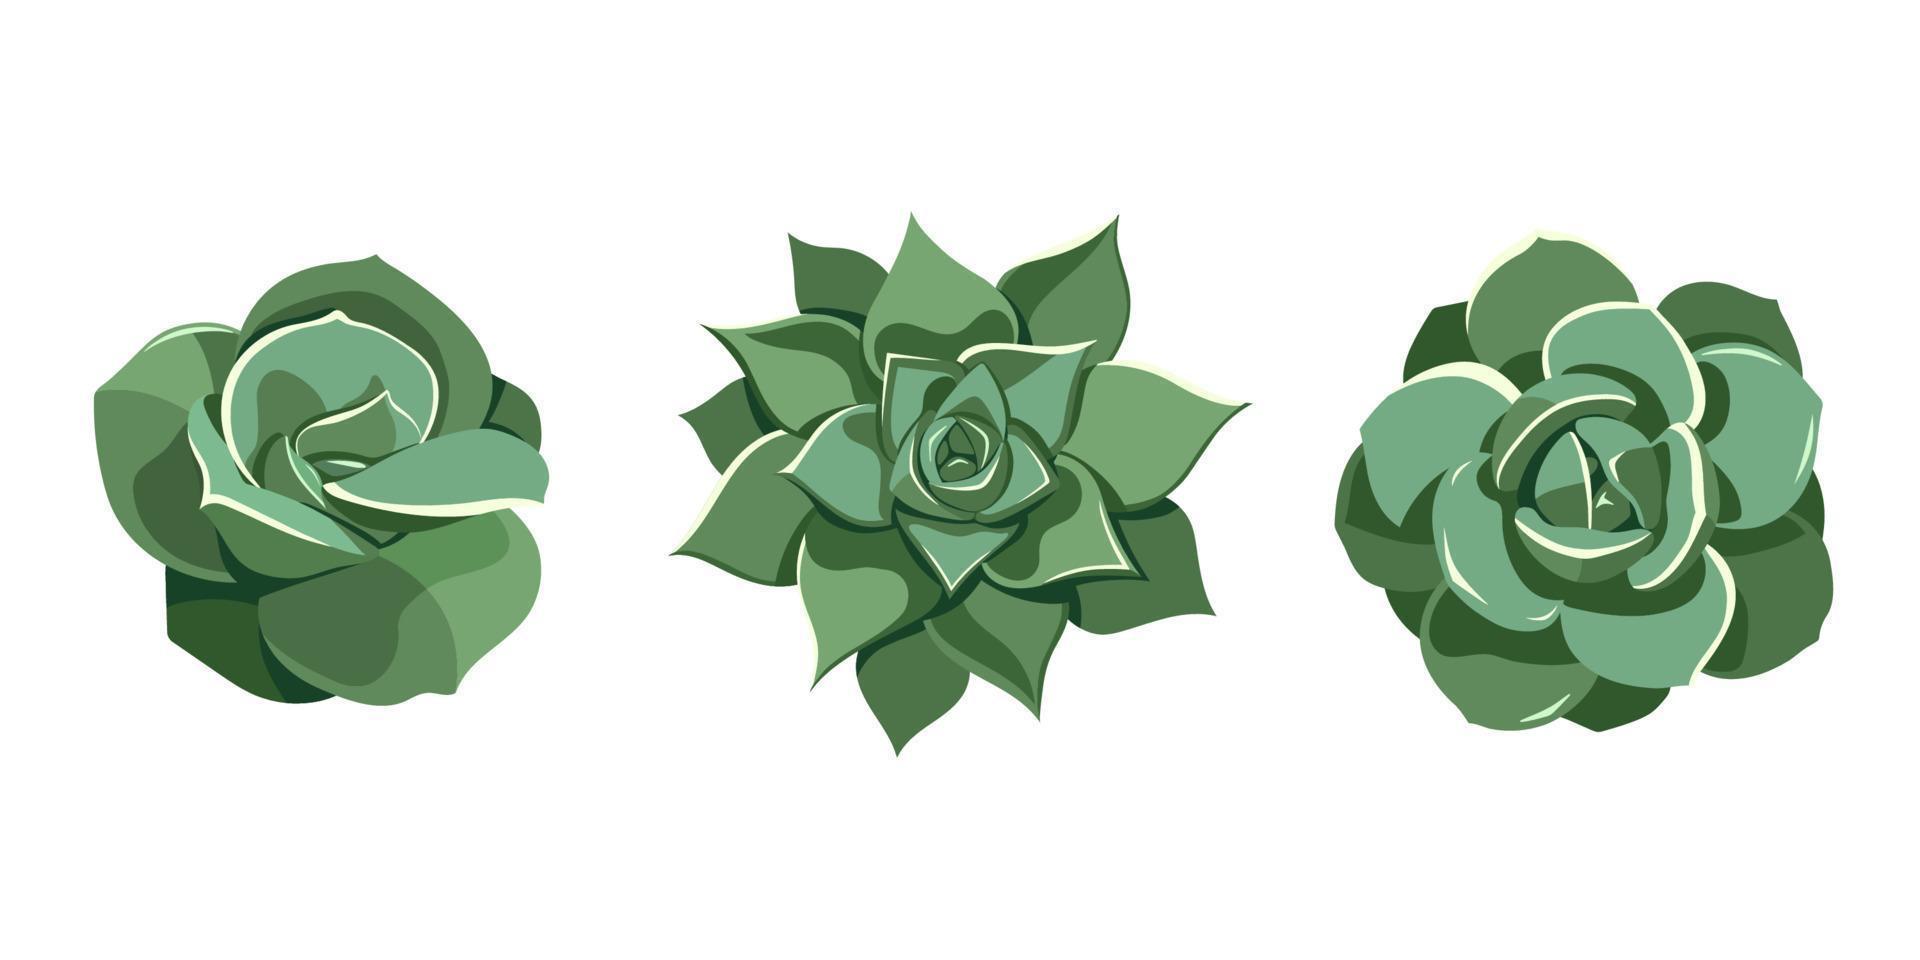 sappige set groene echeveria, mooie roos, laui, agavoides. handgetekende plant in cartoonstijl. grafische schetsbloem voor afdrukken en ontwerpen. vectorillustratie, geïsoleerd element op witte achtergrond vector